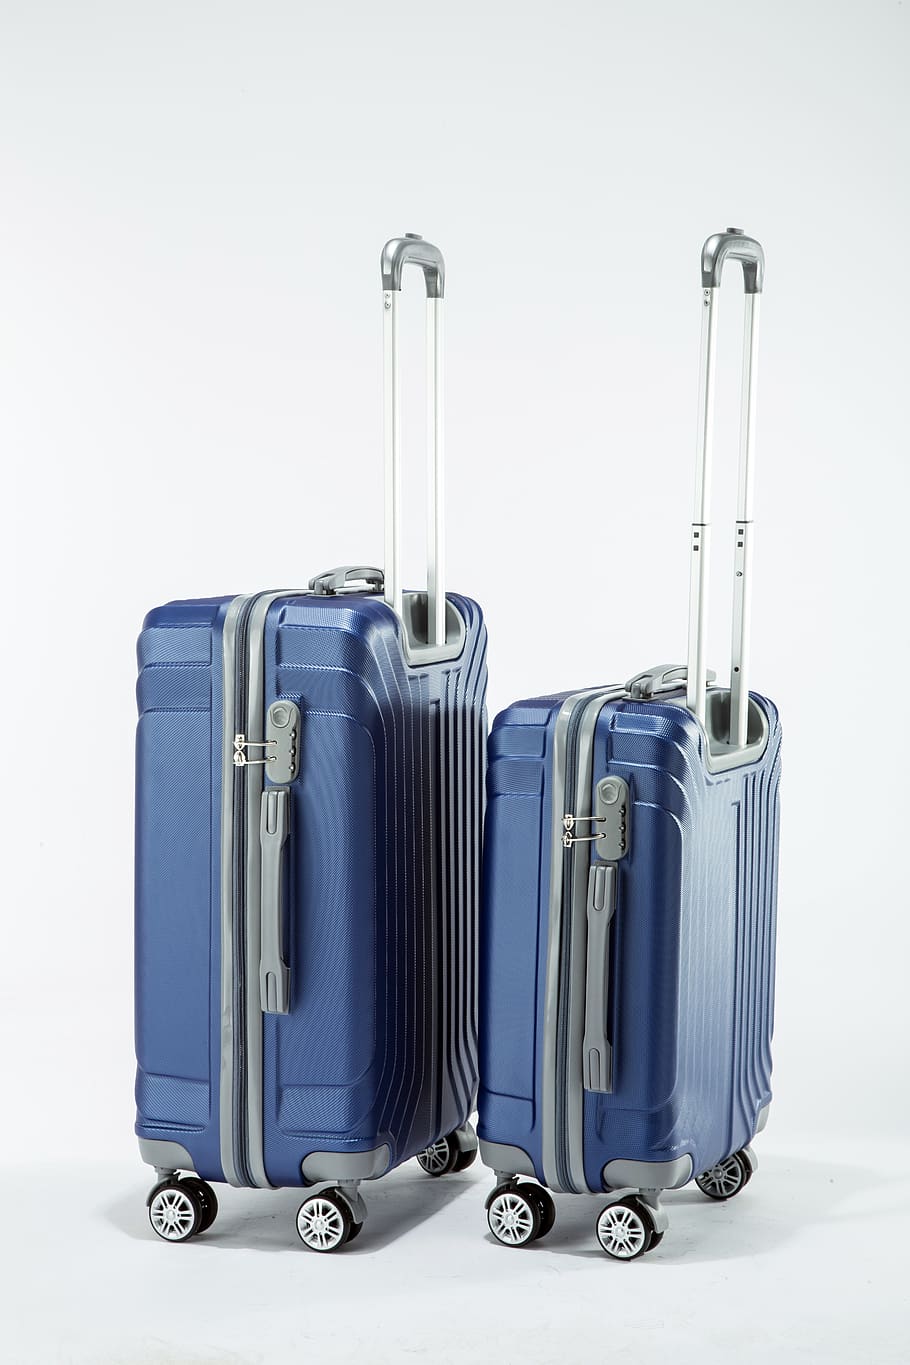 travel bag, hard and, bag, indoors, suitcase, travel, white background, luggage, blue, studio shot